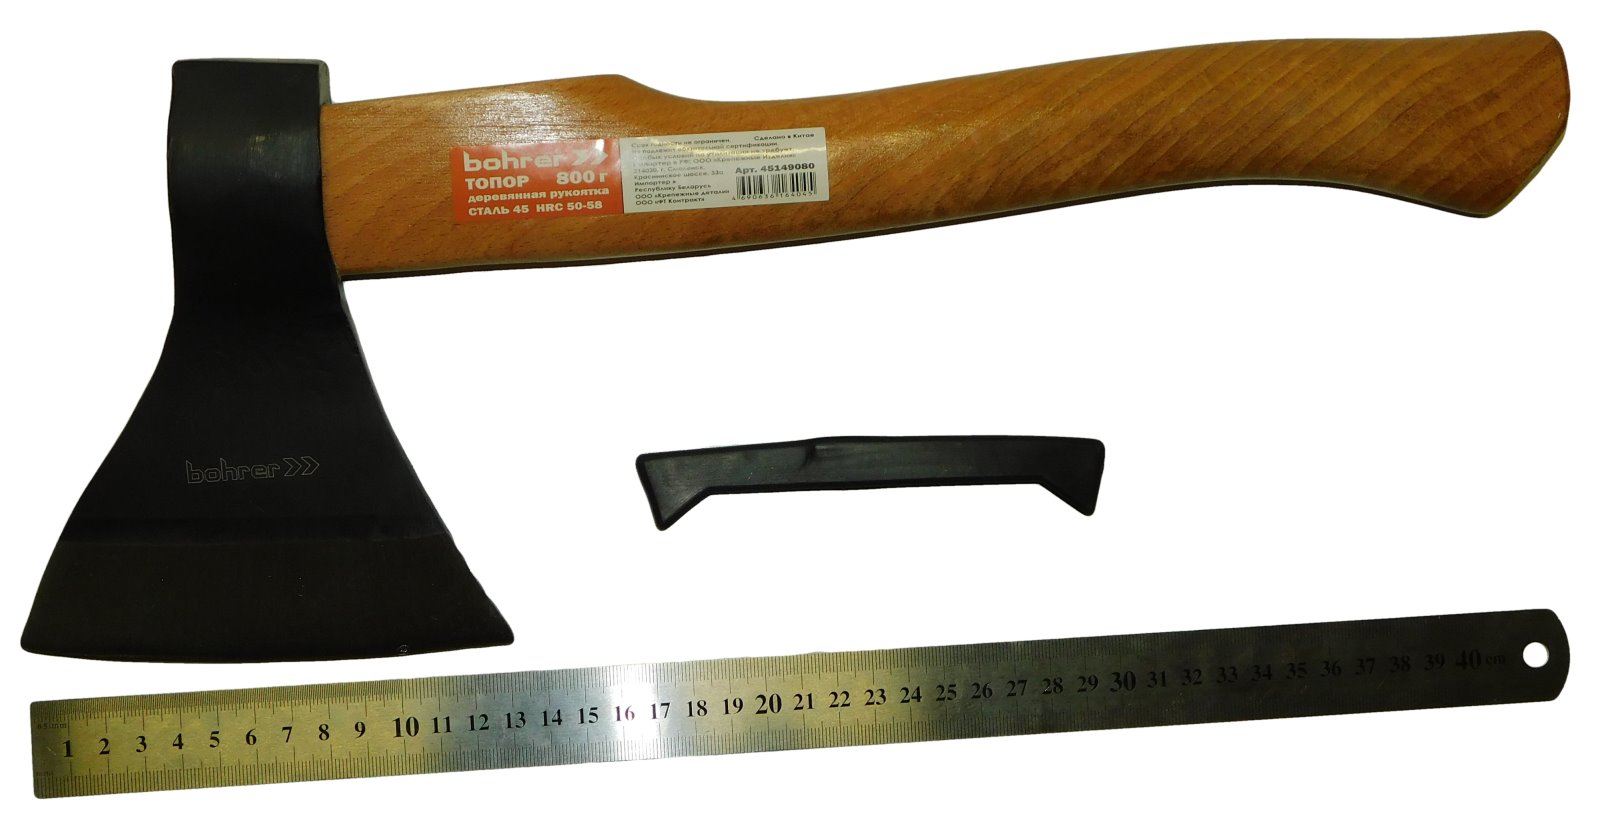 изображение Топор Bohrer 800 г. с деревянной рукояткой (cталь 45 HRC 50-58)